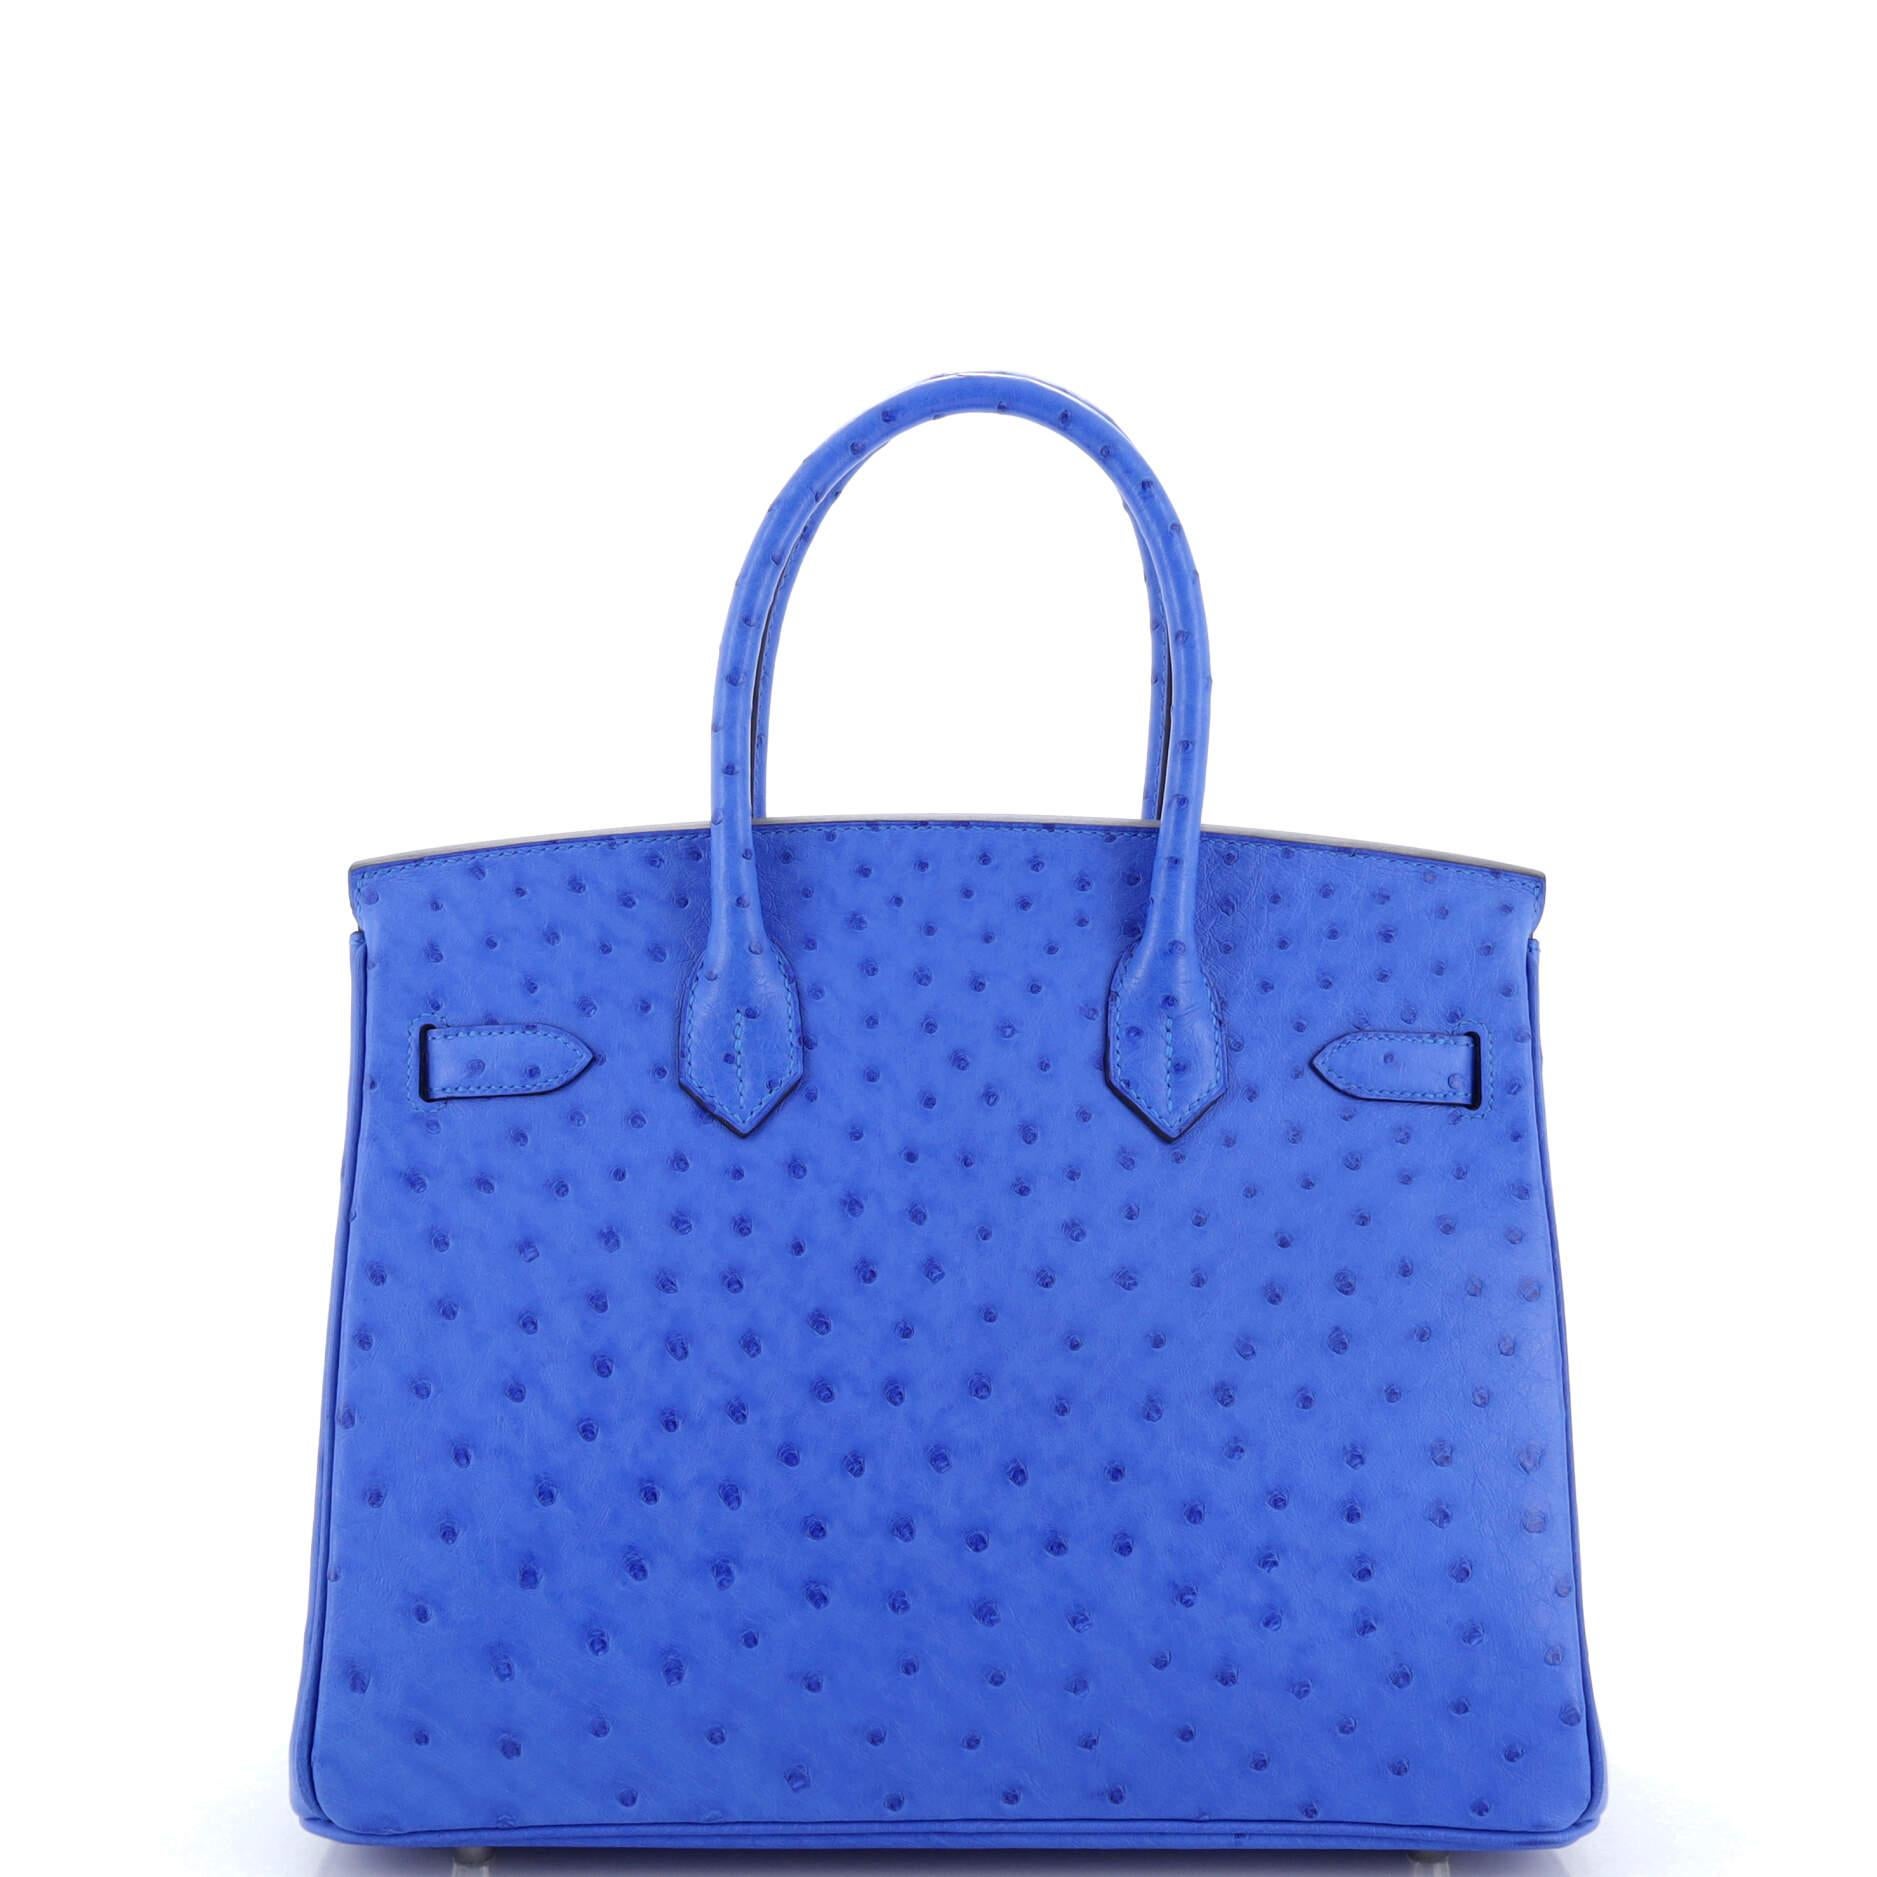 Women's Hermes Birkin Handbag Bleuet Ostrich with Palladium Hardware 30